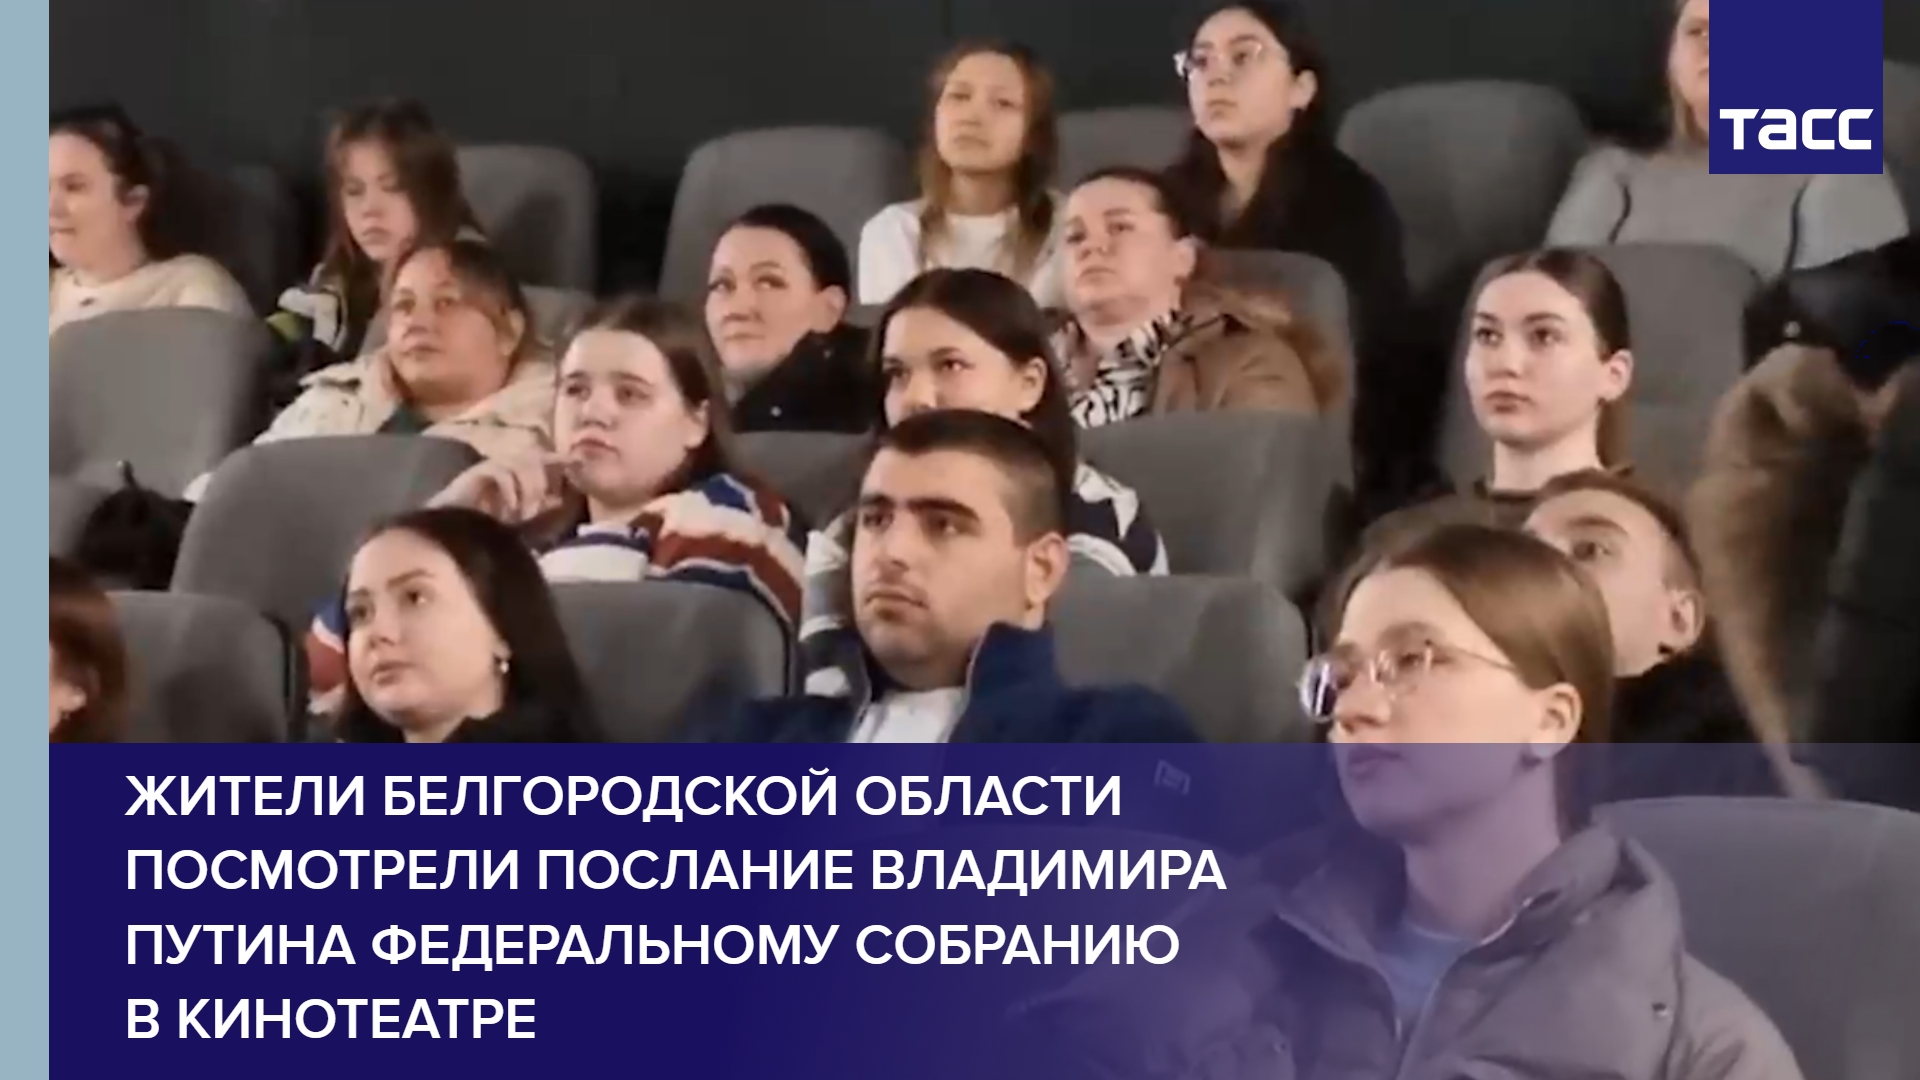 Жители Белгородской области посмотрели послание Владимира Путина Федеральному собранию в кинотеатре